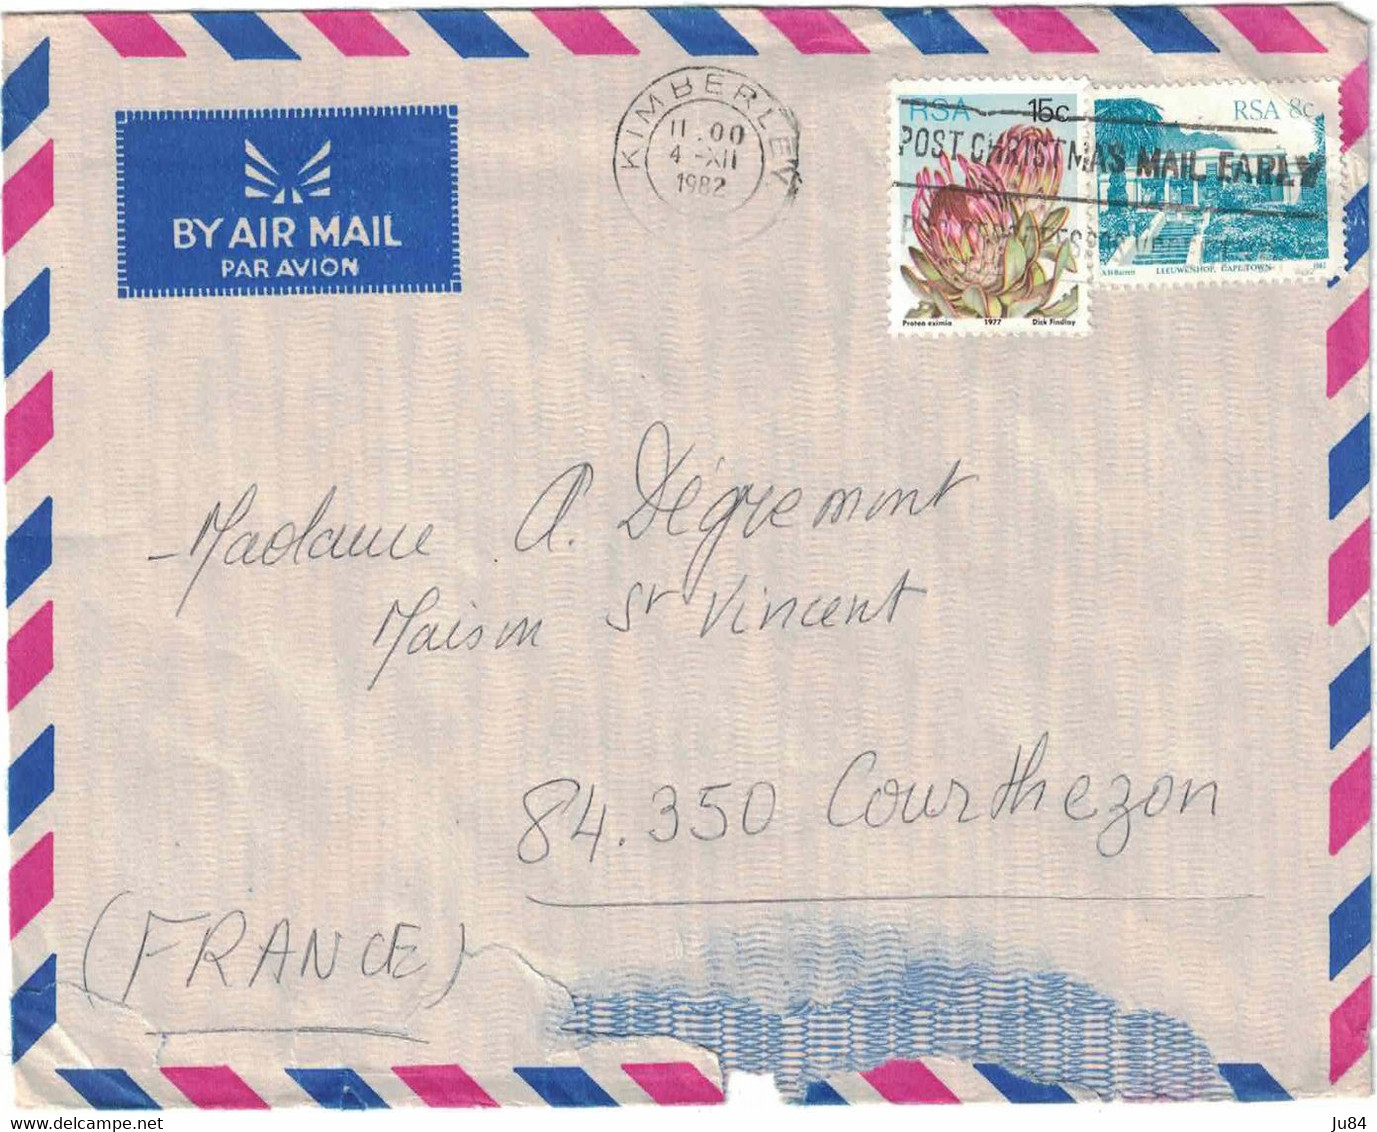 Afrique Du Sud - Kimberley - Lettre Avion Pour La France - Post Crhistmas Mail - 4 Décembre 1982 - Usati